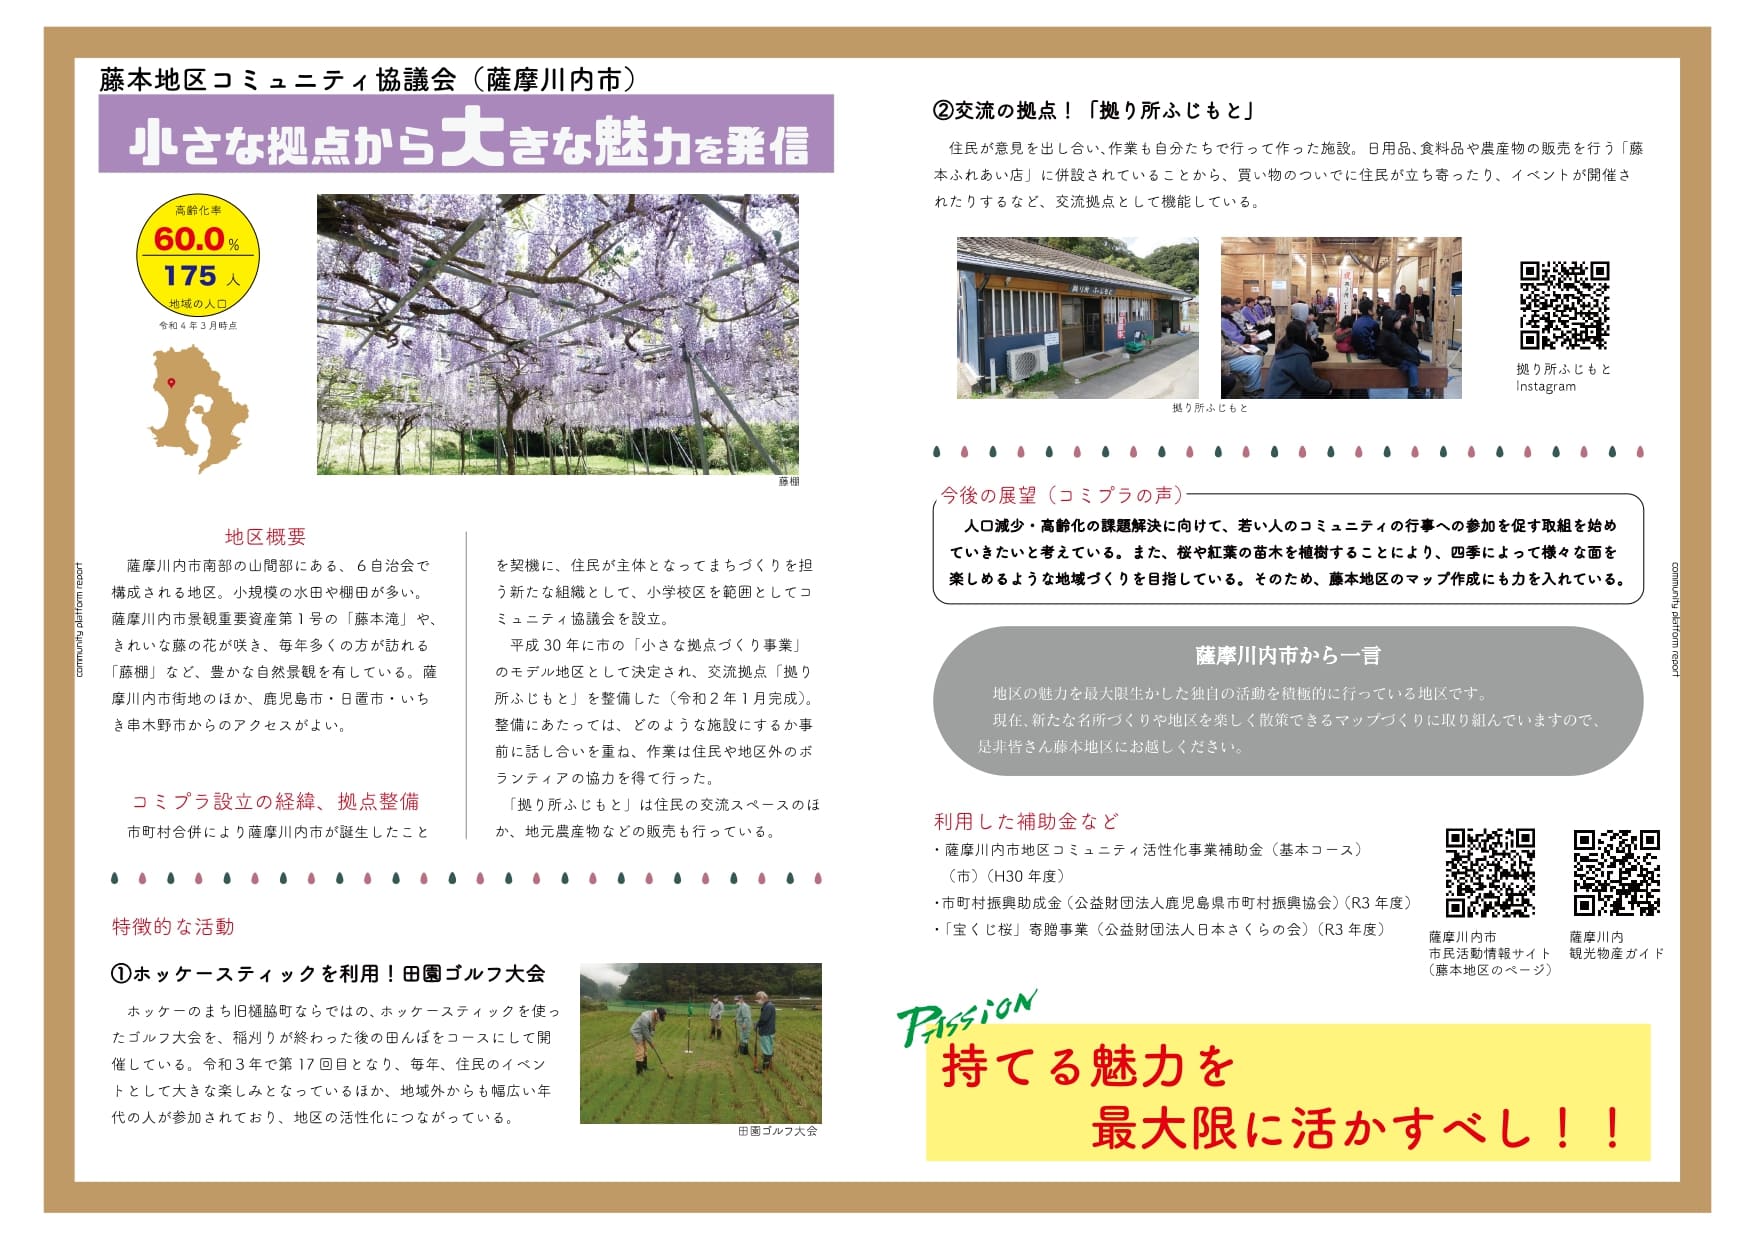 藤本地区コミュニティ協議会(薩摩川内市)の「小さな拠点から大きな魅力を発信」の説明の画像